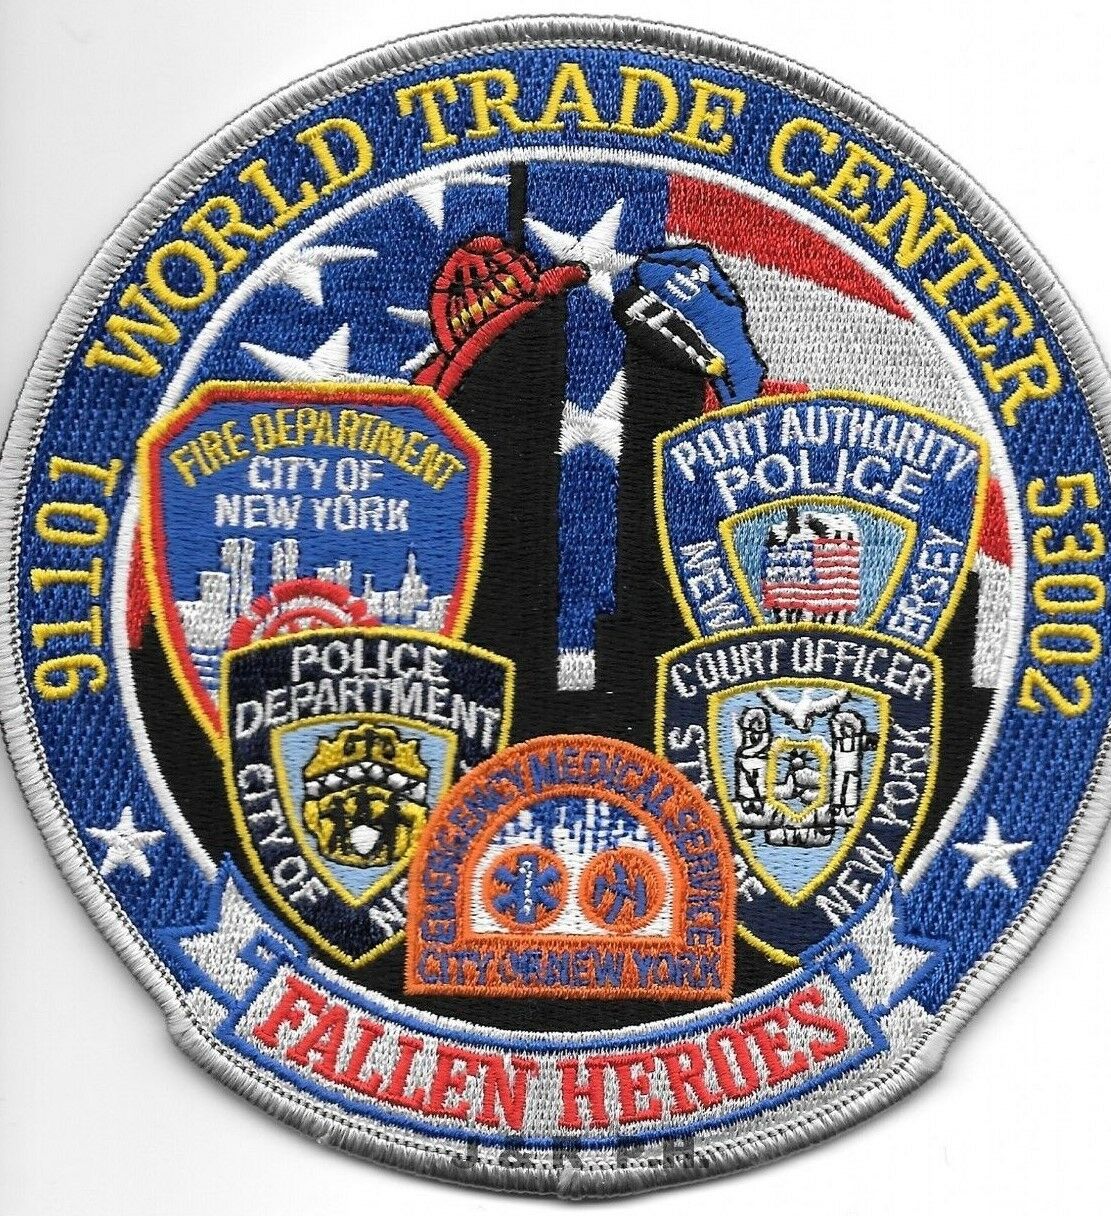 9-11-01 Tribute - W.T.C.  Fallen Heroes - Blue  (5